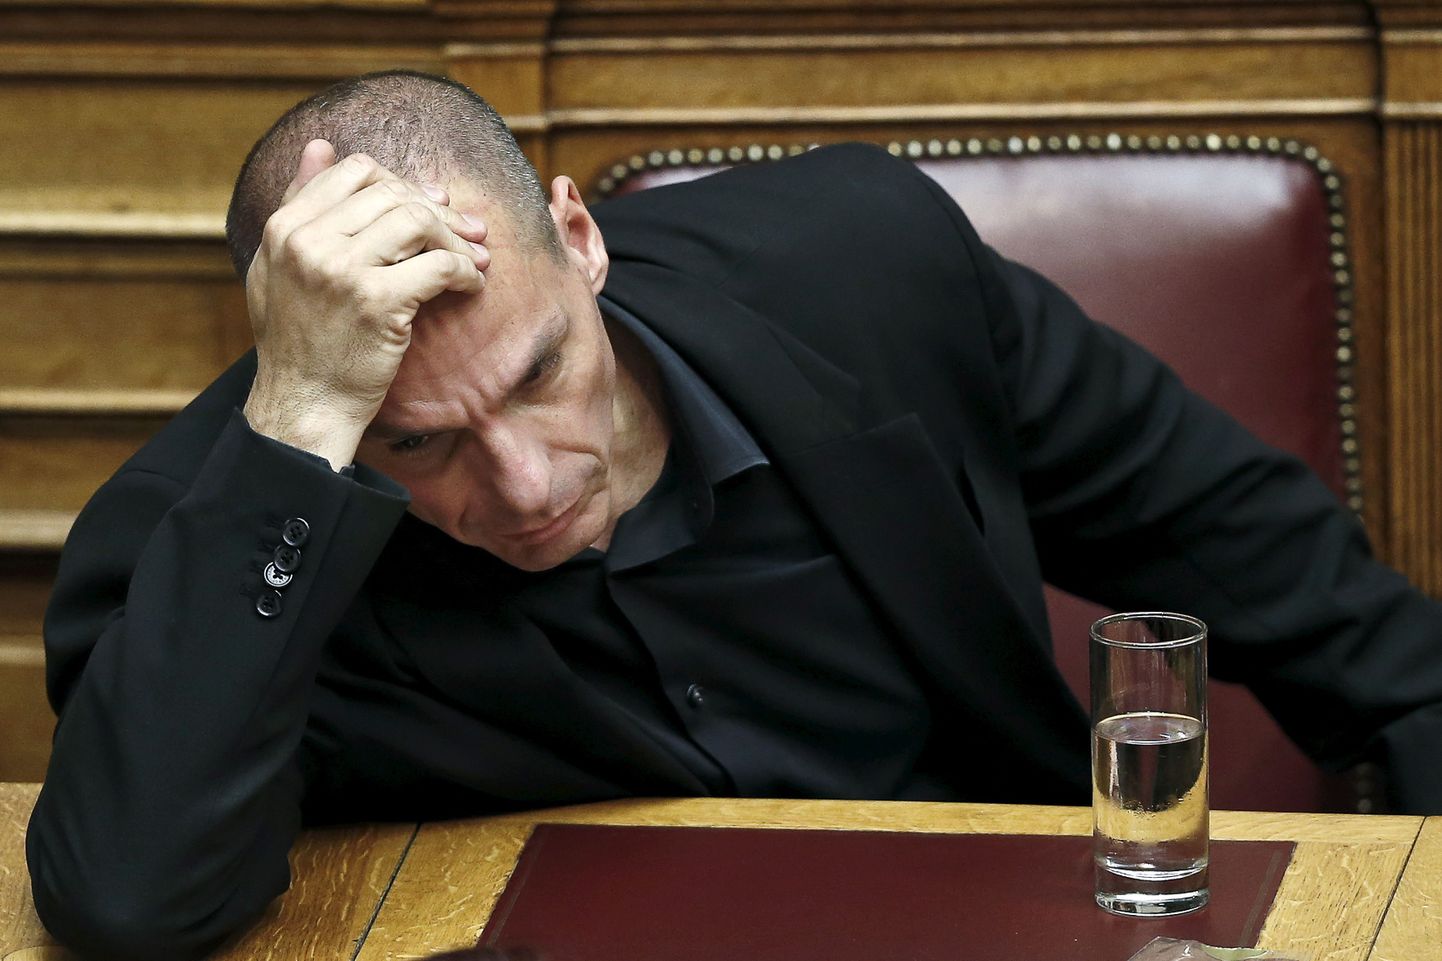 Kreeka rahandusminister Yanis Varoufakis.